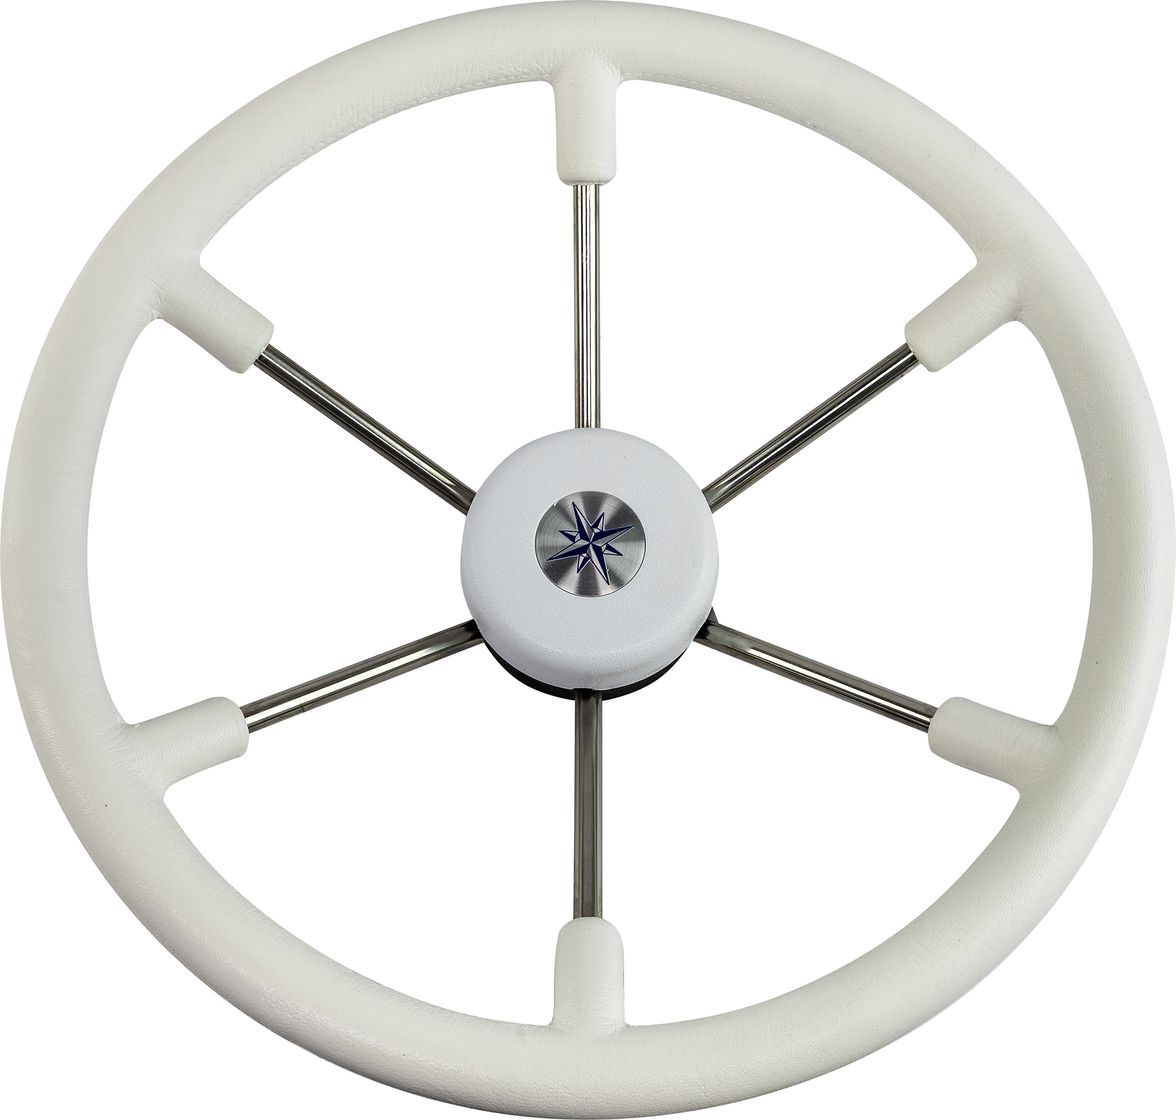 Рулевое колесо LEADER TANEGUM белый обод серебряные спицы д. 400 мм VN7400-08 рулевое колесо leader plast белый обод серебряные спицы д 330 мм vn8330 08